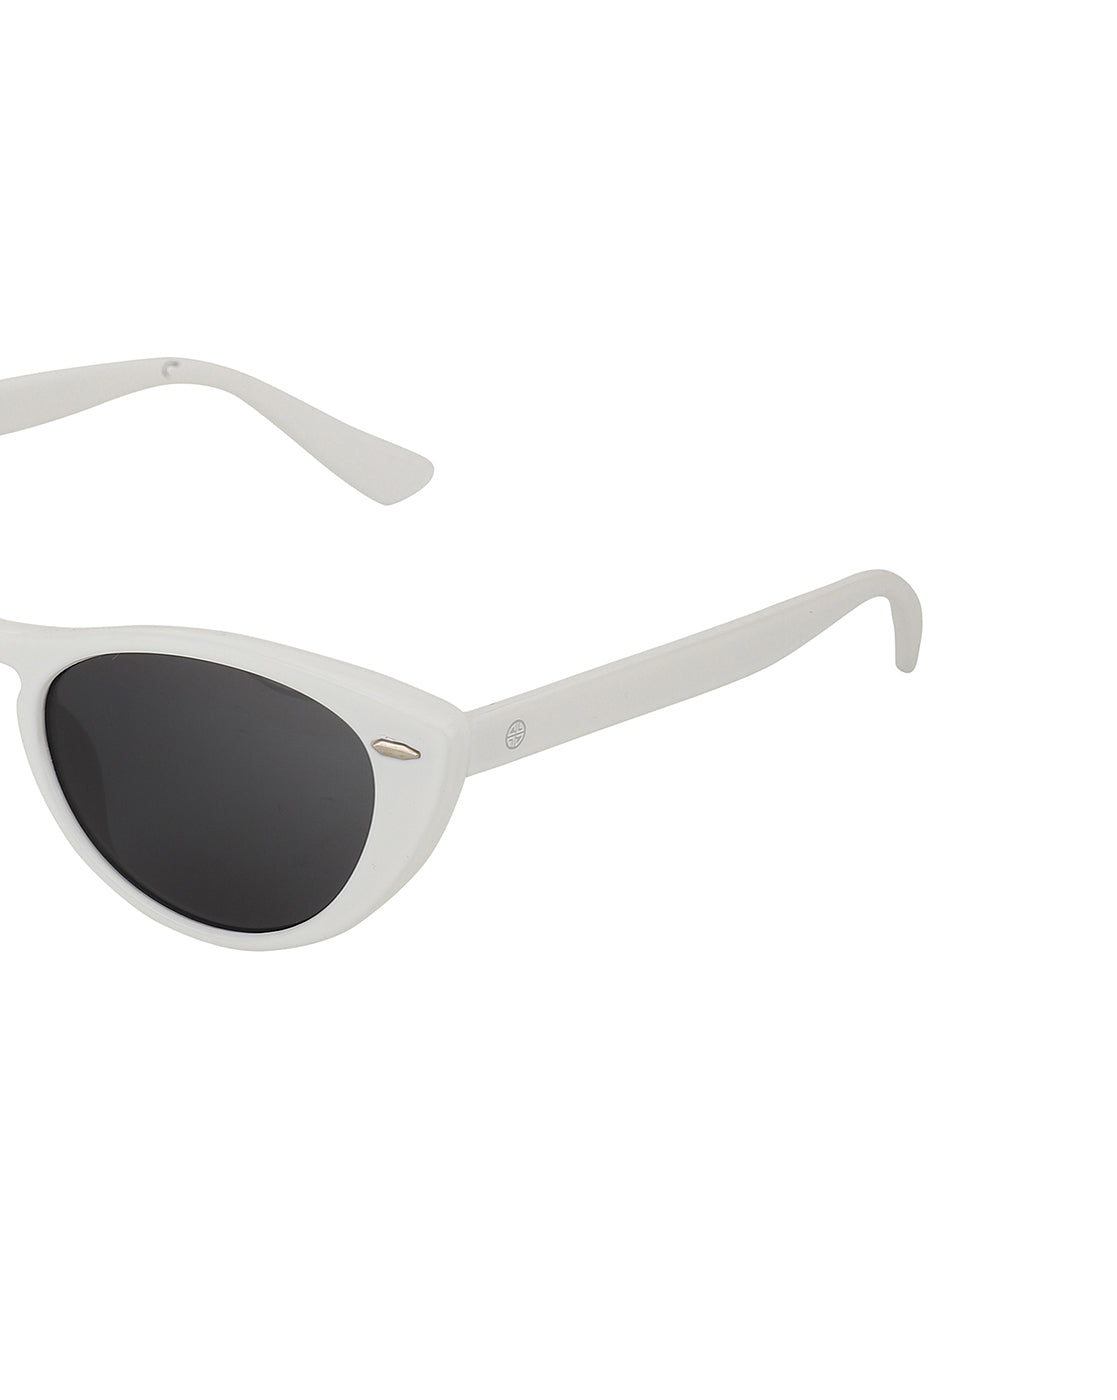 White Sunglasses For Men and Women - 10 Trending Models